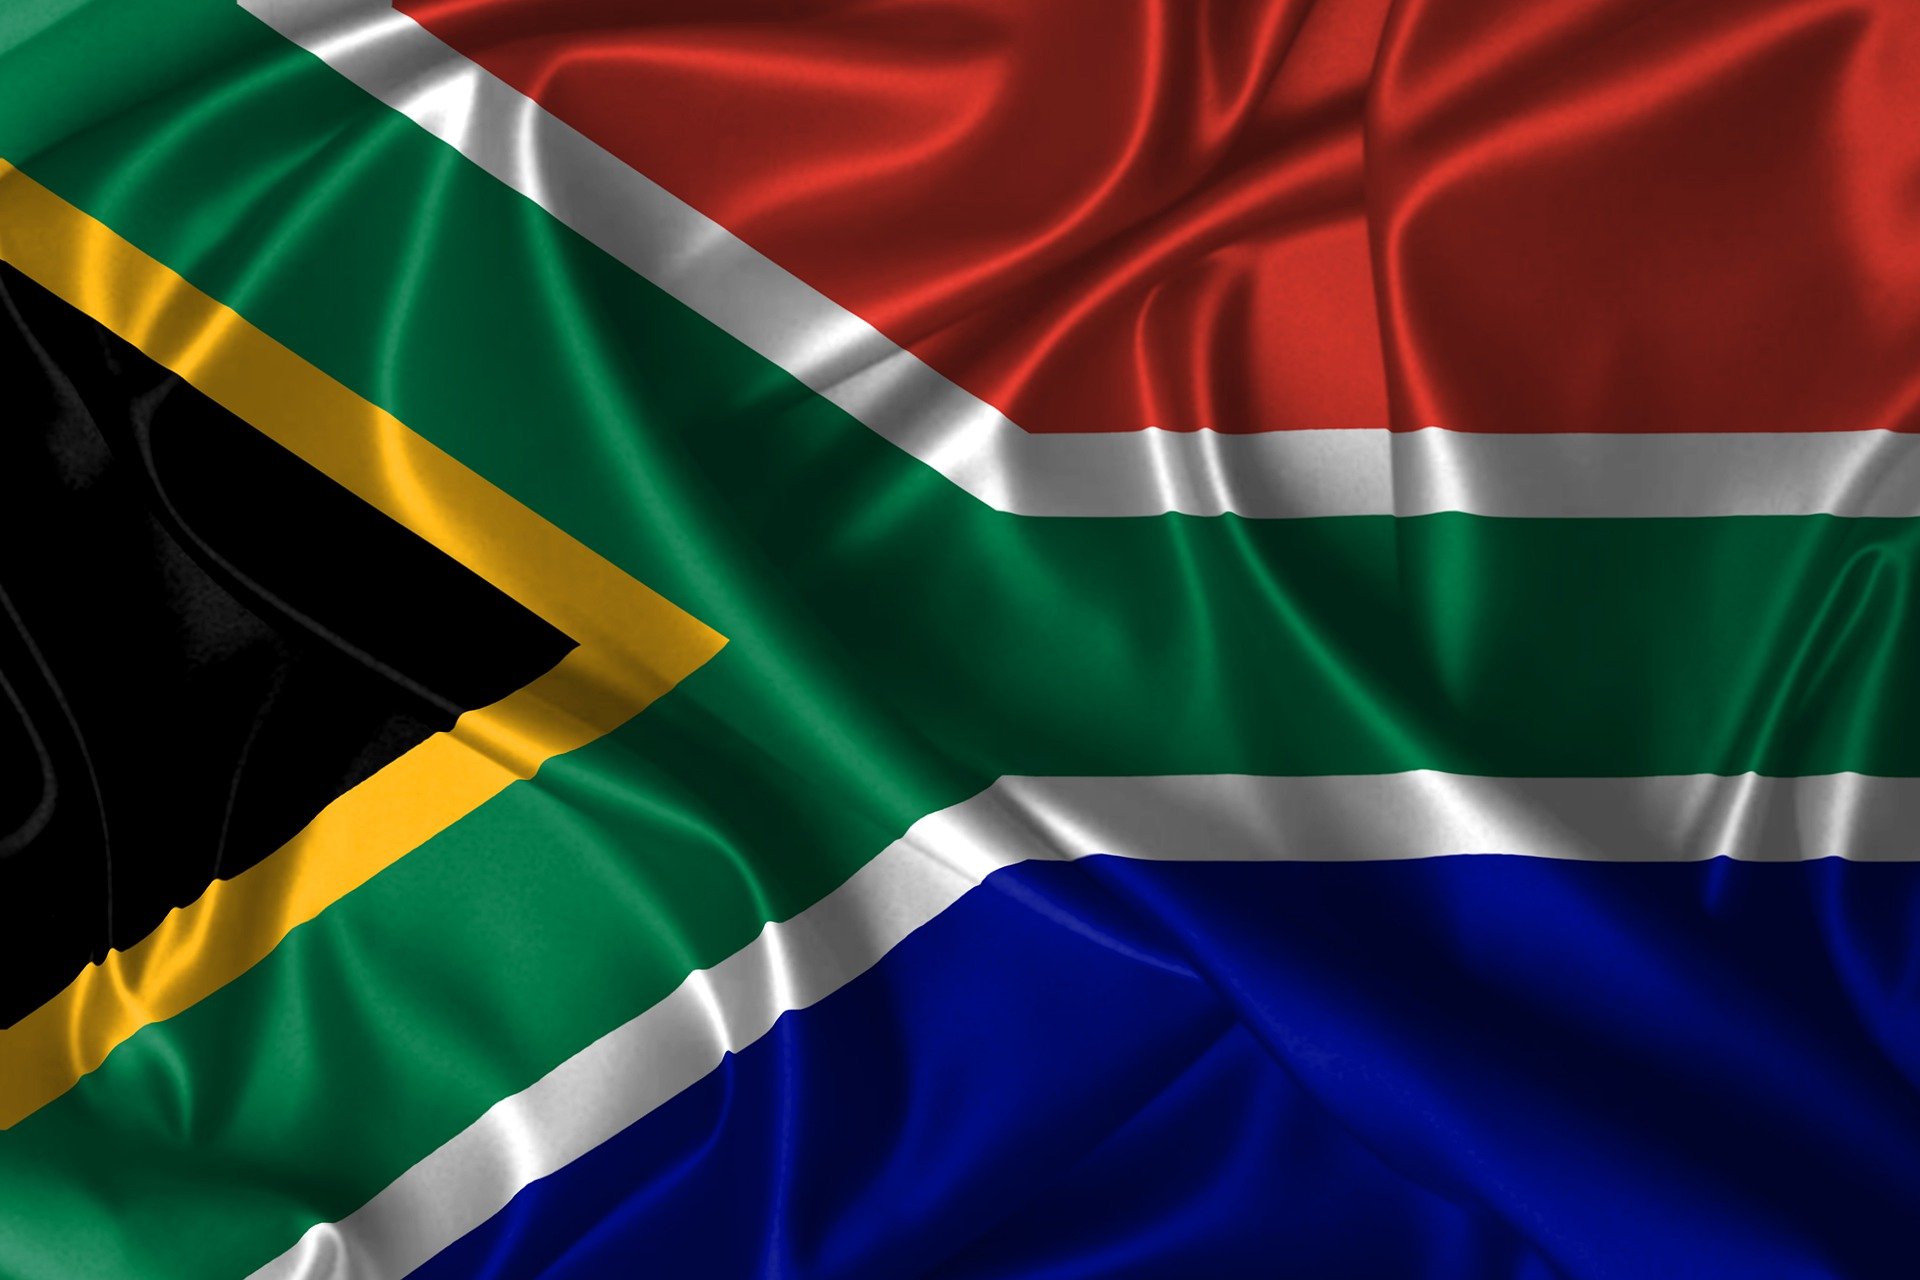 Cuál es la bandera de áfrica